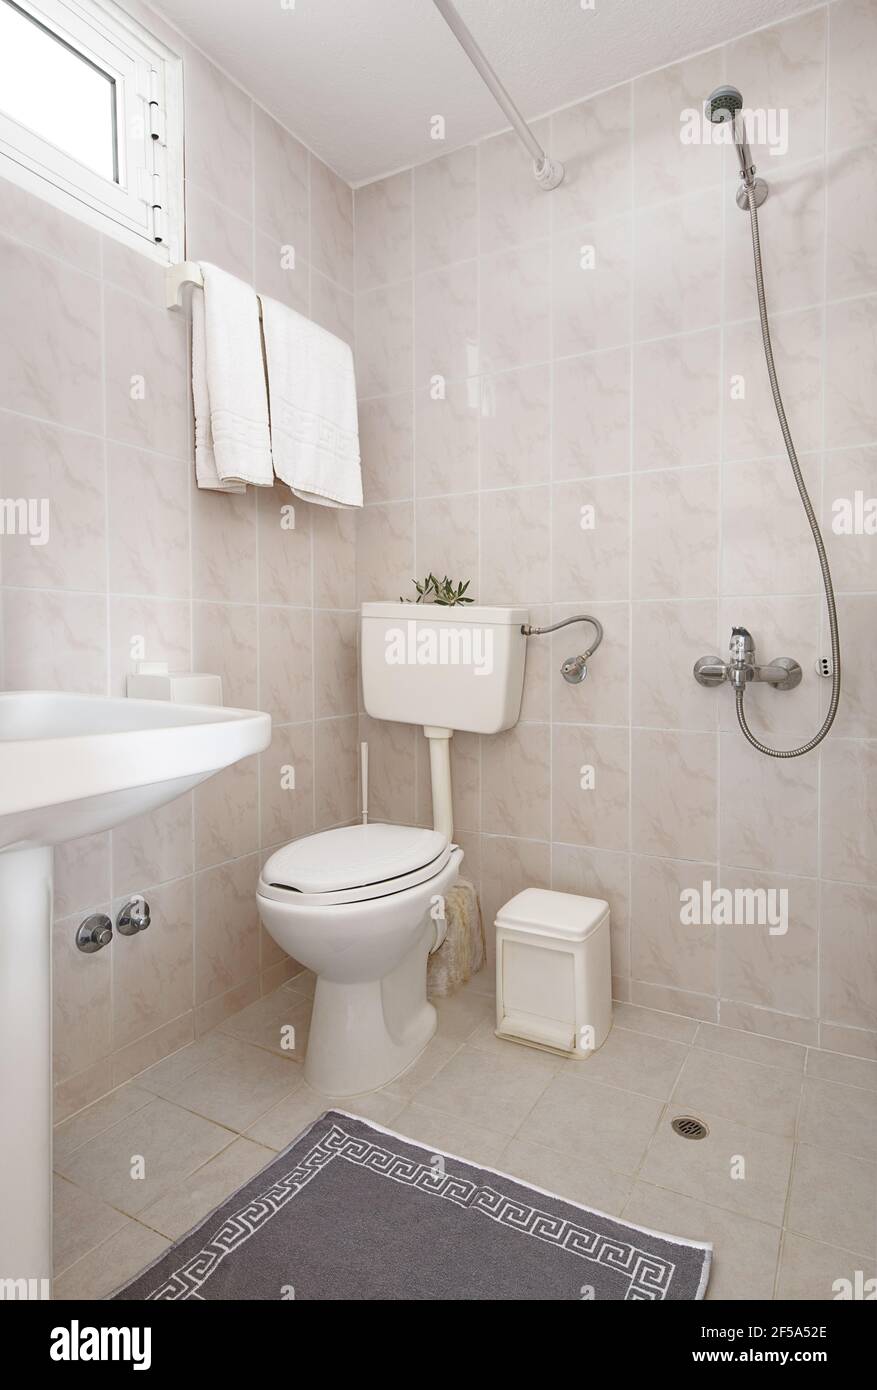 Einfache Einrichtung von kleinen Toiletten mit beigefarbenen Keramikfliesen, weißem Waschbecken, klassischer Toilette, grauem Ornamentteppich, offener Dusche Stockfoto